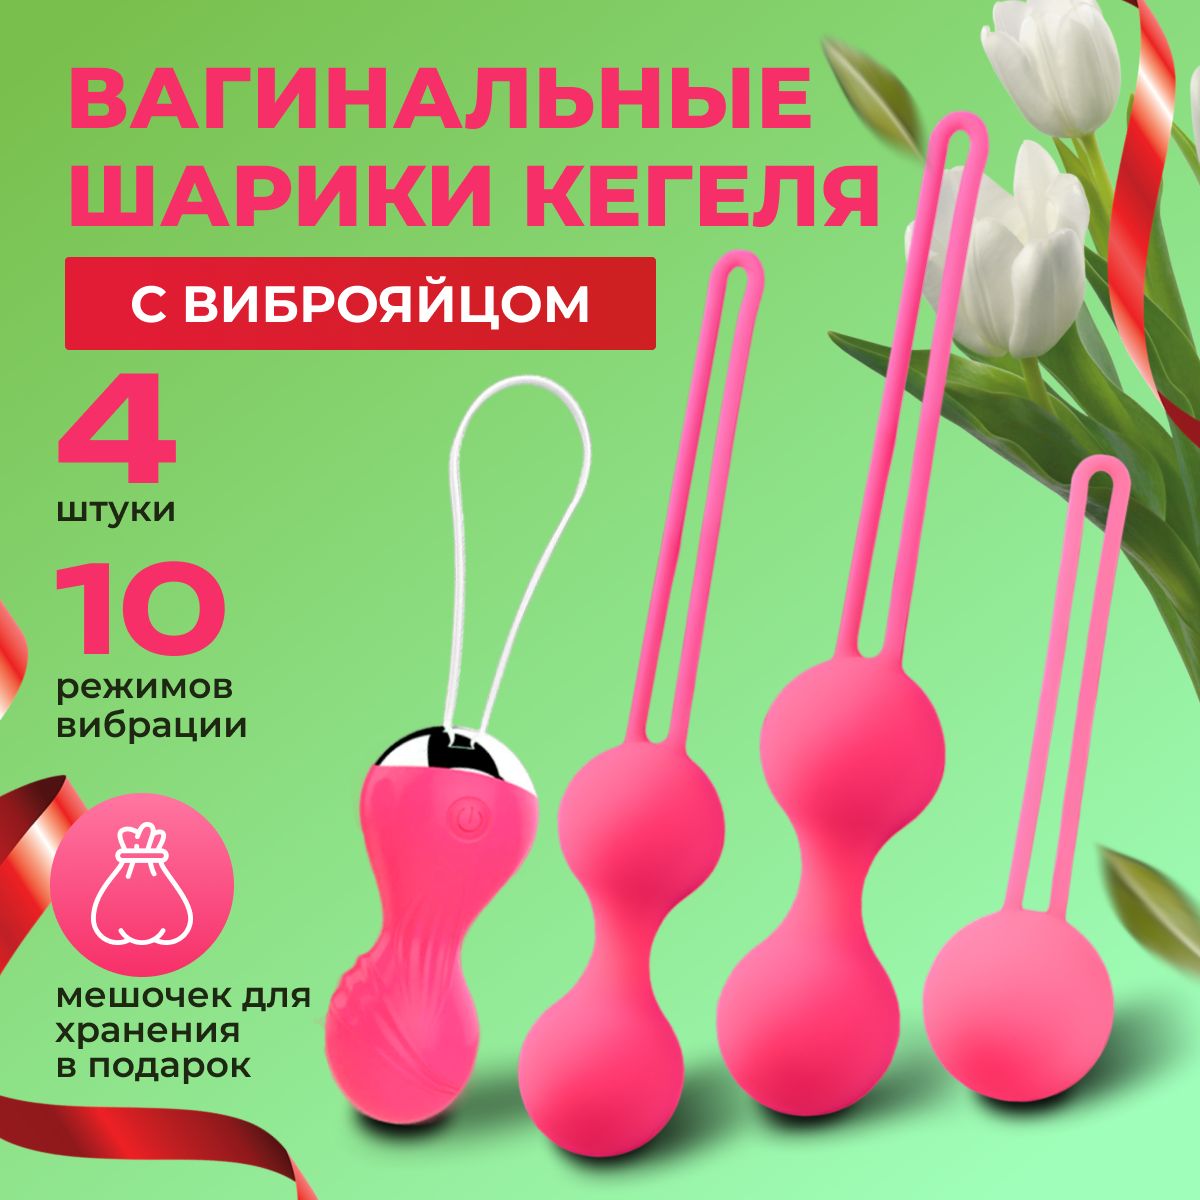 Шарики вагинальные купить в интернет-магазине: фото, характеристики, доставка по всей России